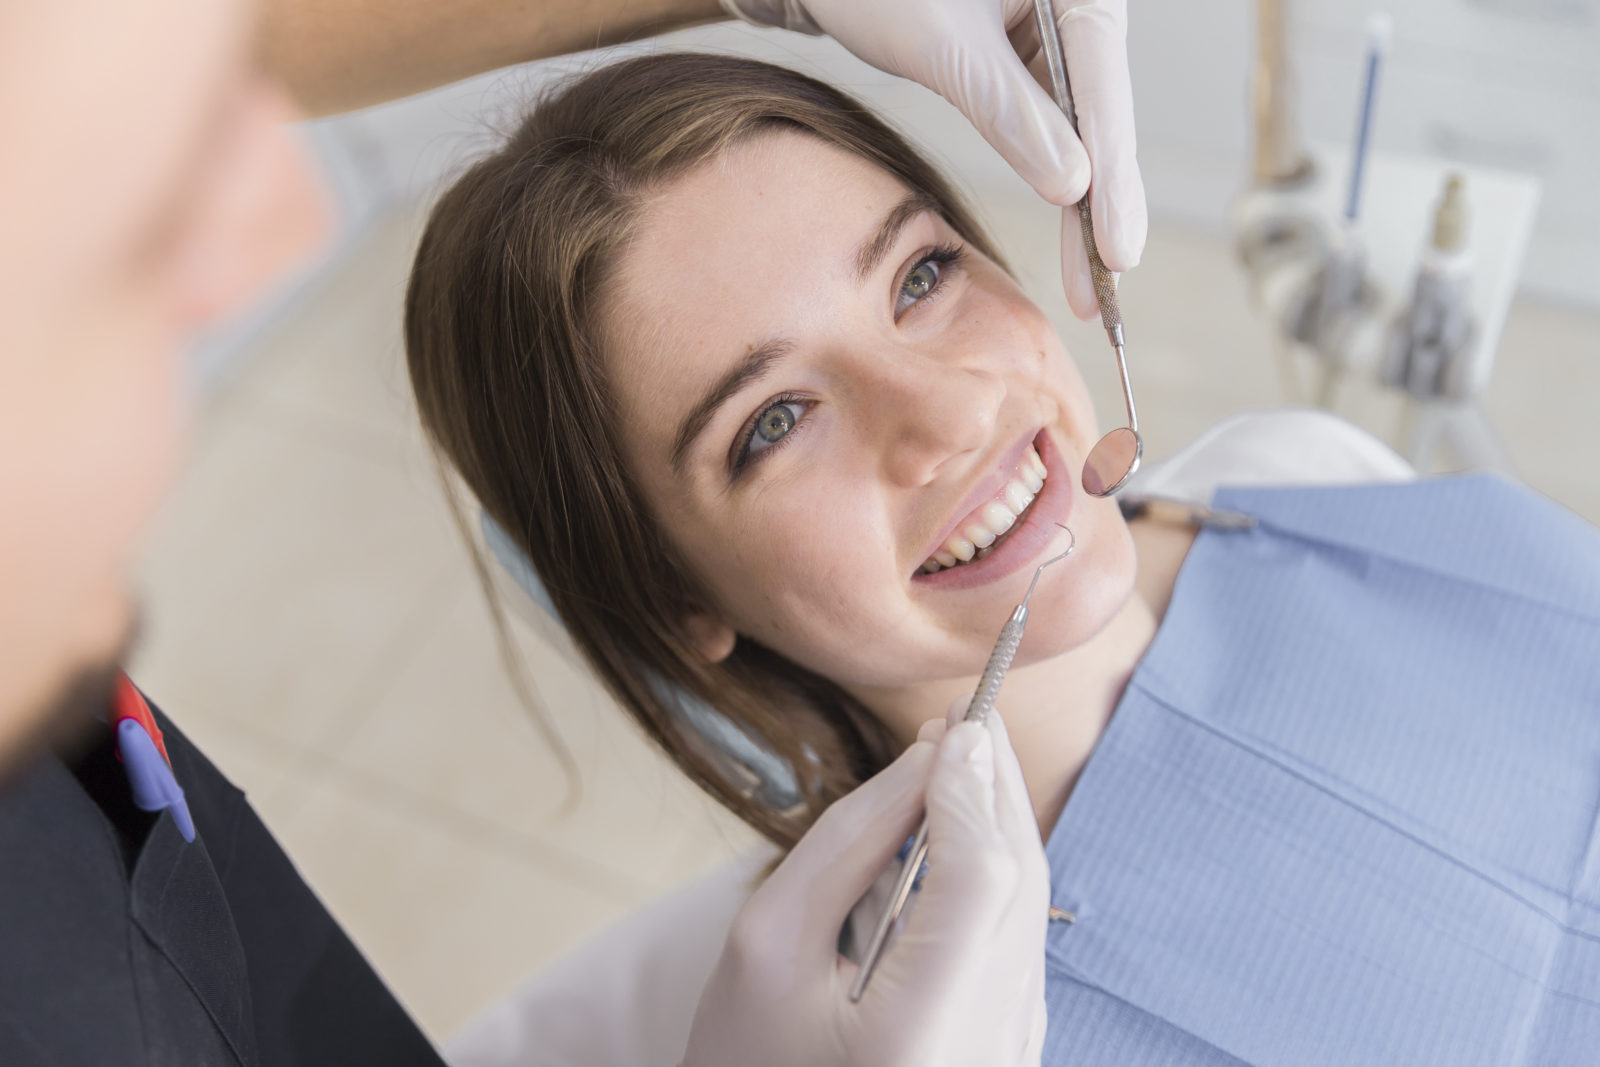 Endodoncia: tratamiento para curar una infección dental